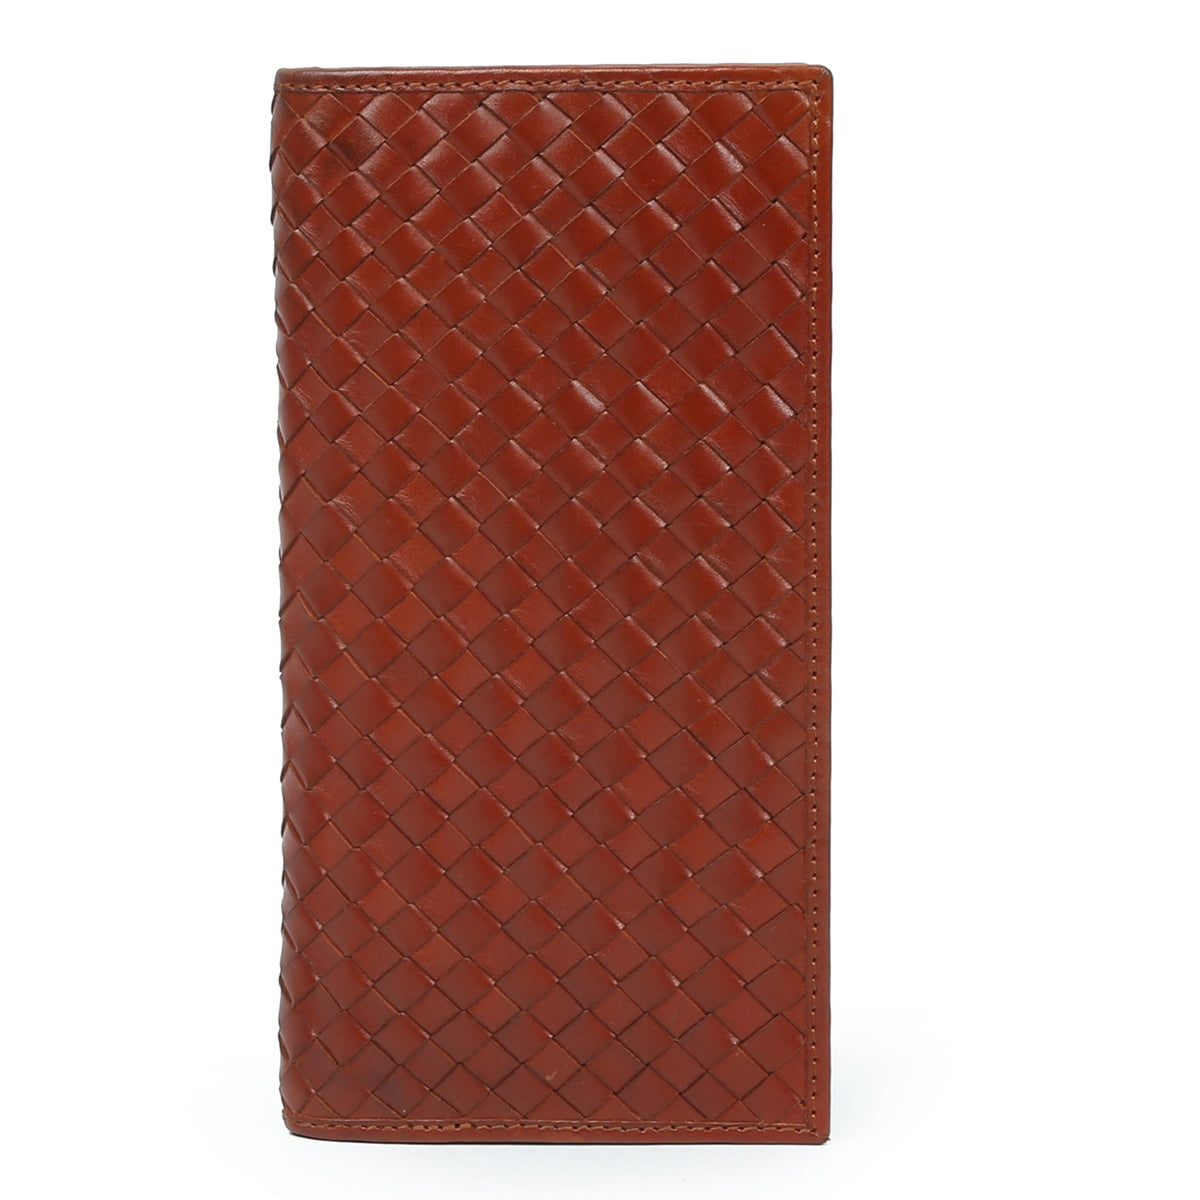 Cognac Hand Weave Leather Clutch/Wallet For Women By Brune & Bareskin